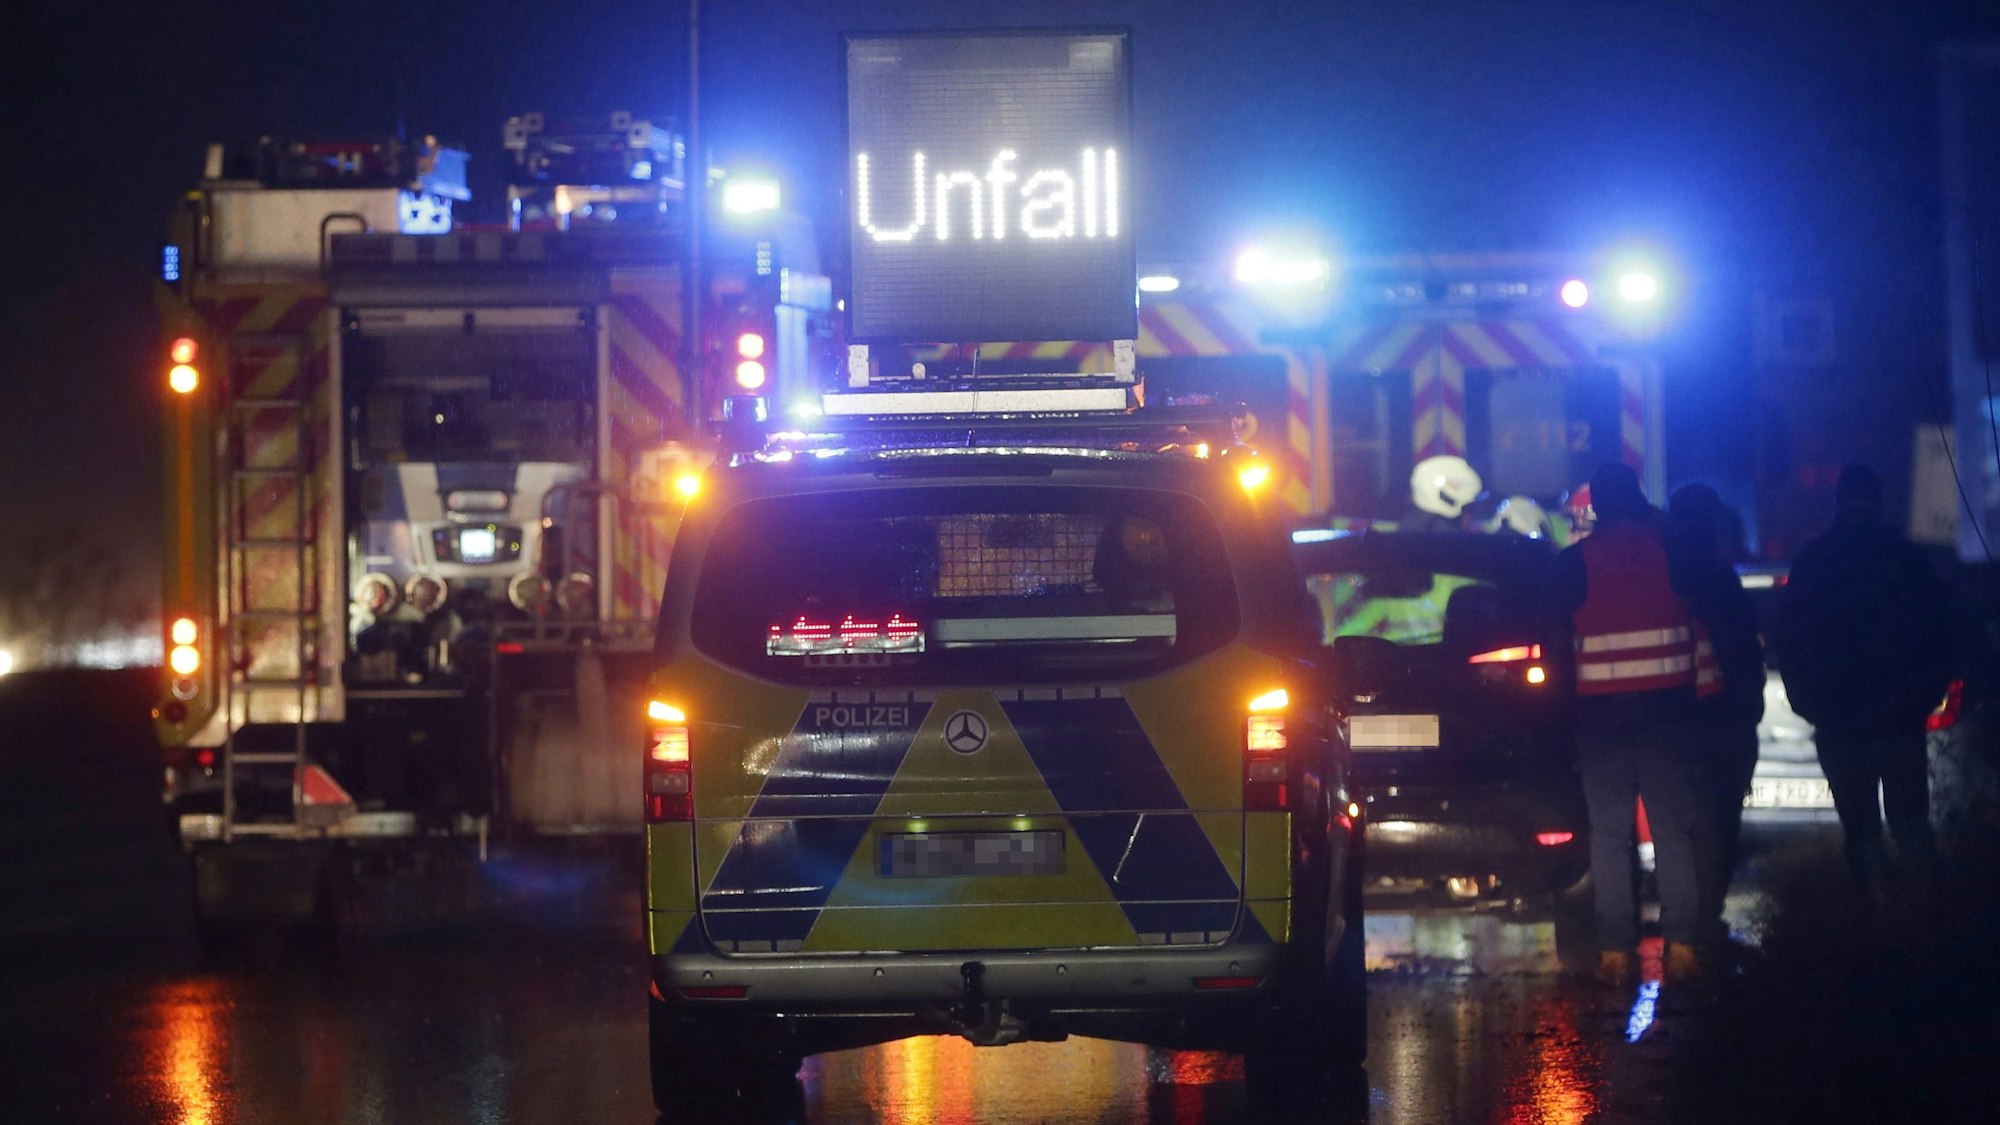 Polizei- und Feuerwehrfahrzeuge sicher mit Blaulicht einen schweren Unfall auf der Autobahn 3. Im Hintergrund sind Rettungskräfte in Warnwesten zu sehen. (Symbolbild)